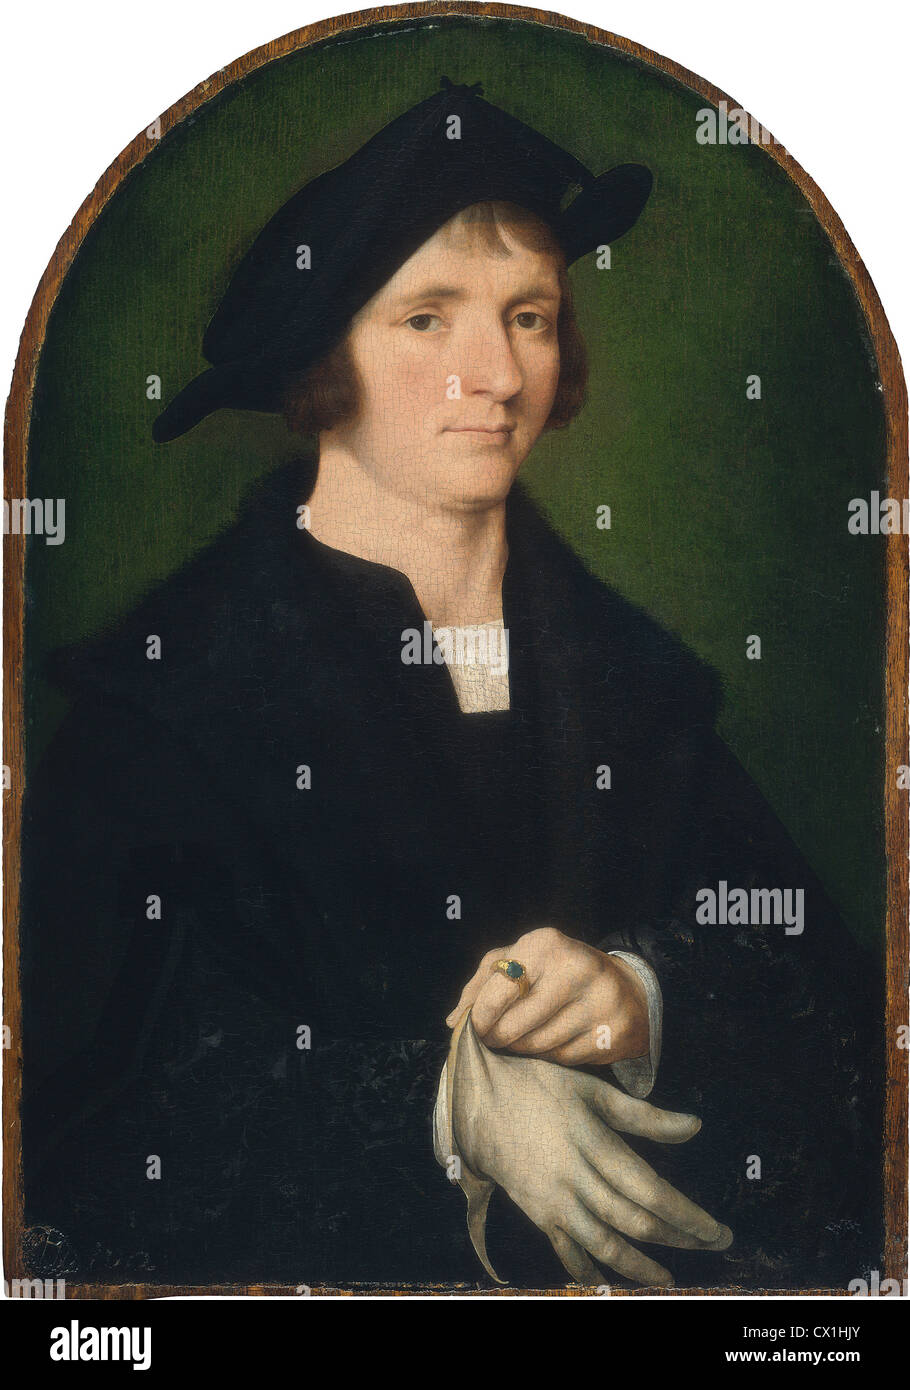 Joos van Cleve, Joris Vezeleer, Netherlandish, active 1505/1508 - 1540/1541, probably 1518, oil on panel Stock Photo